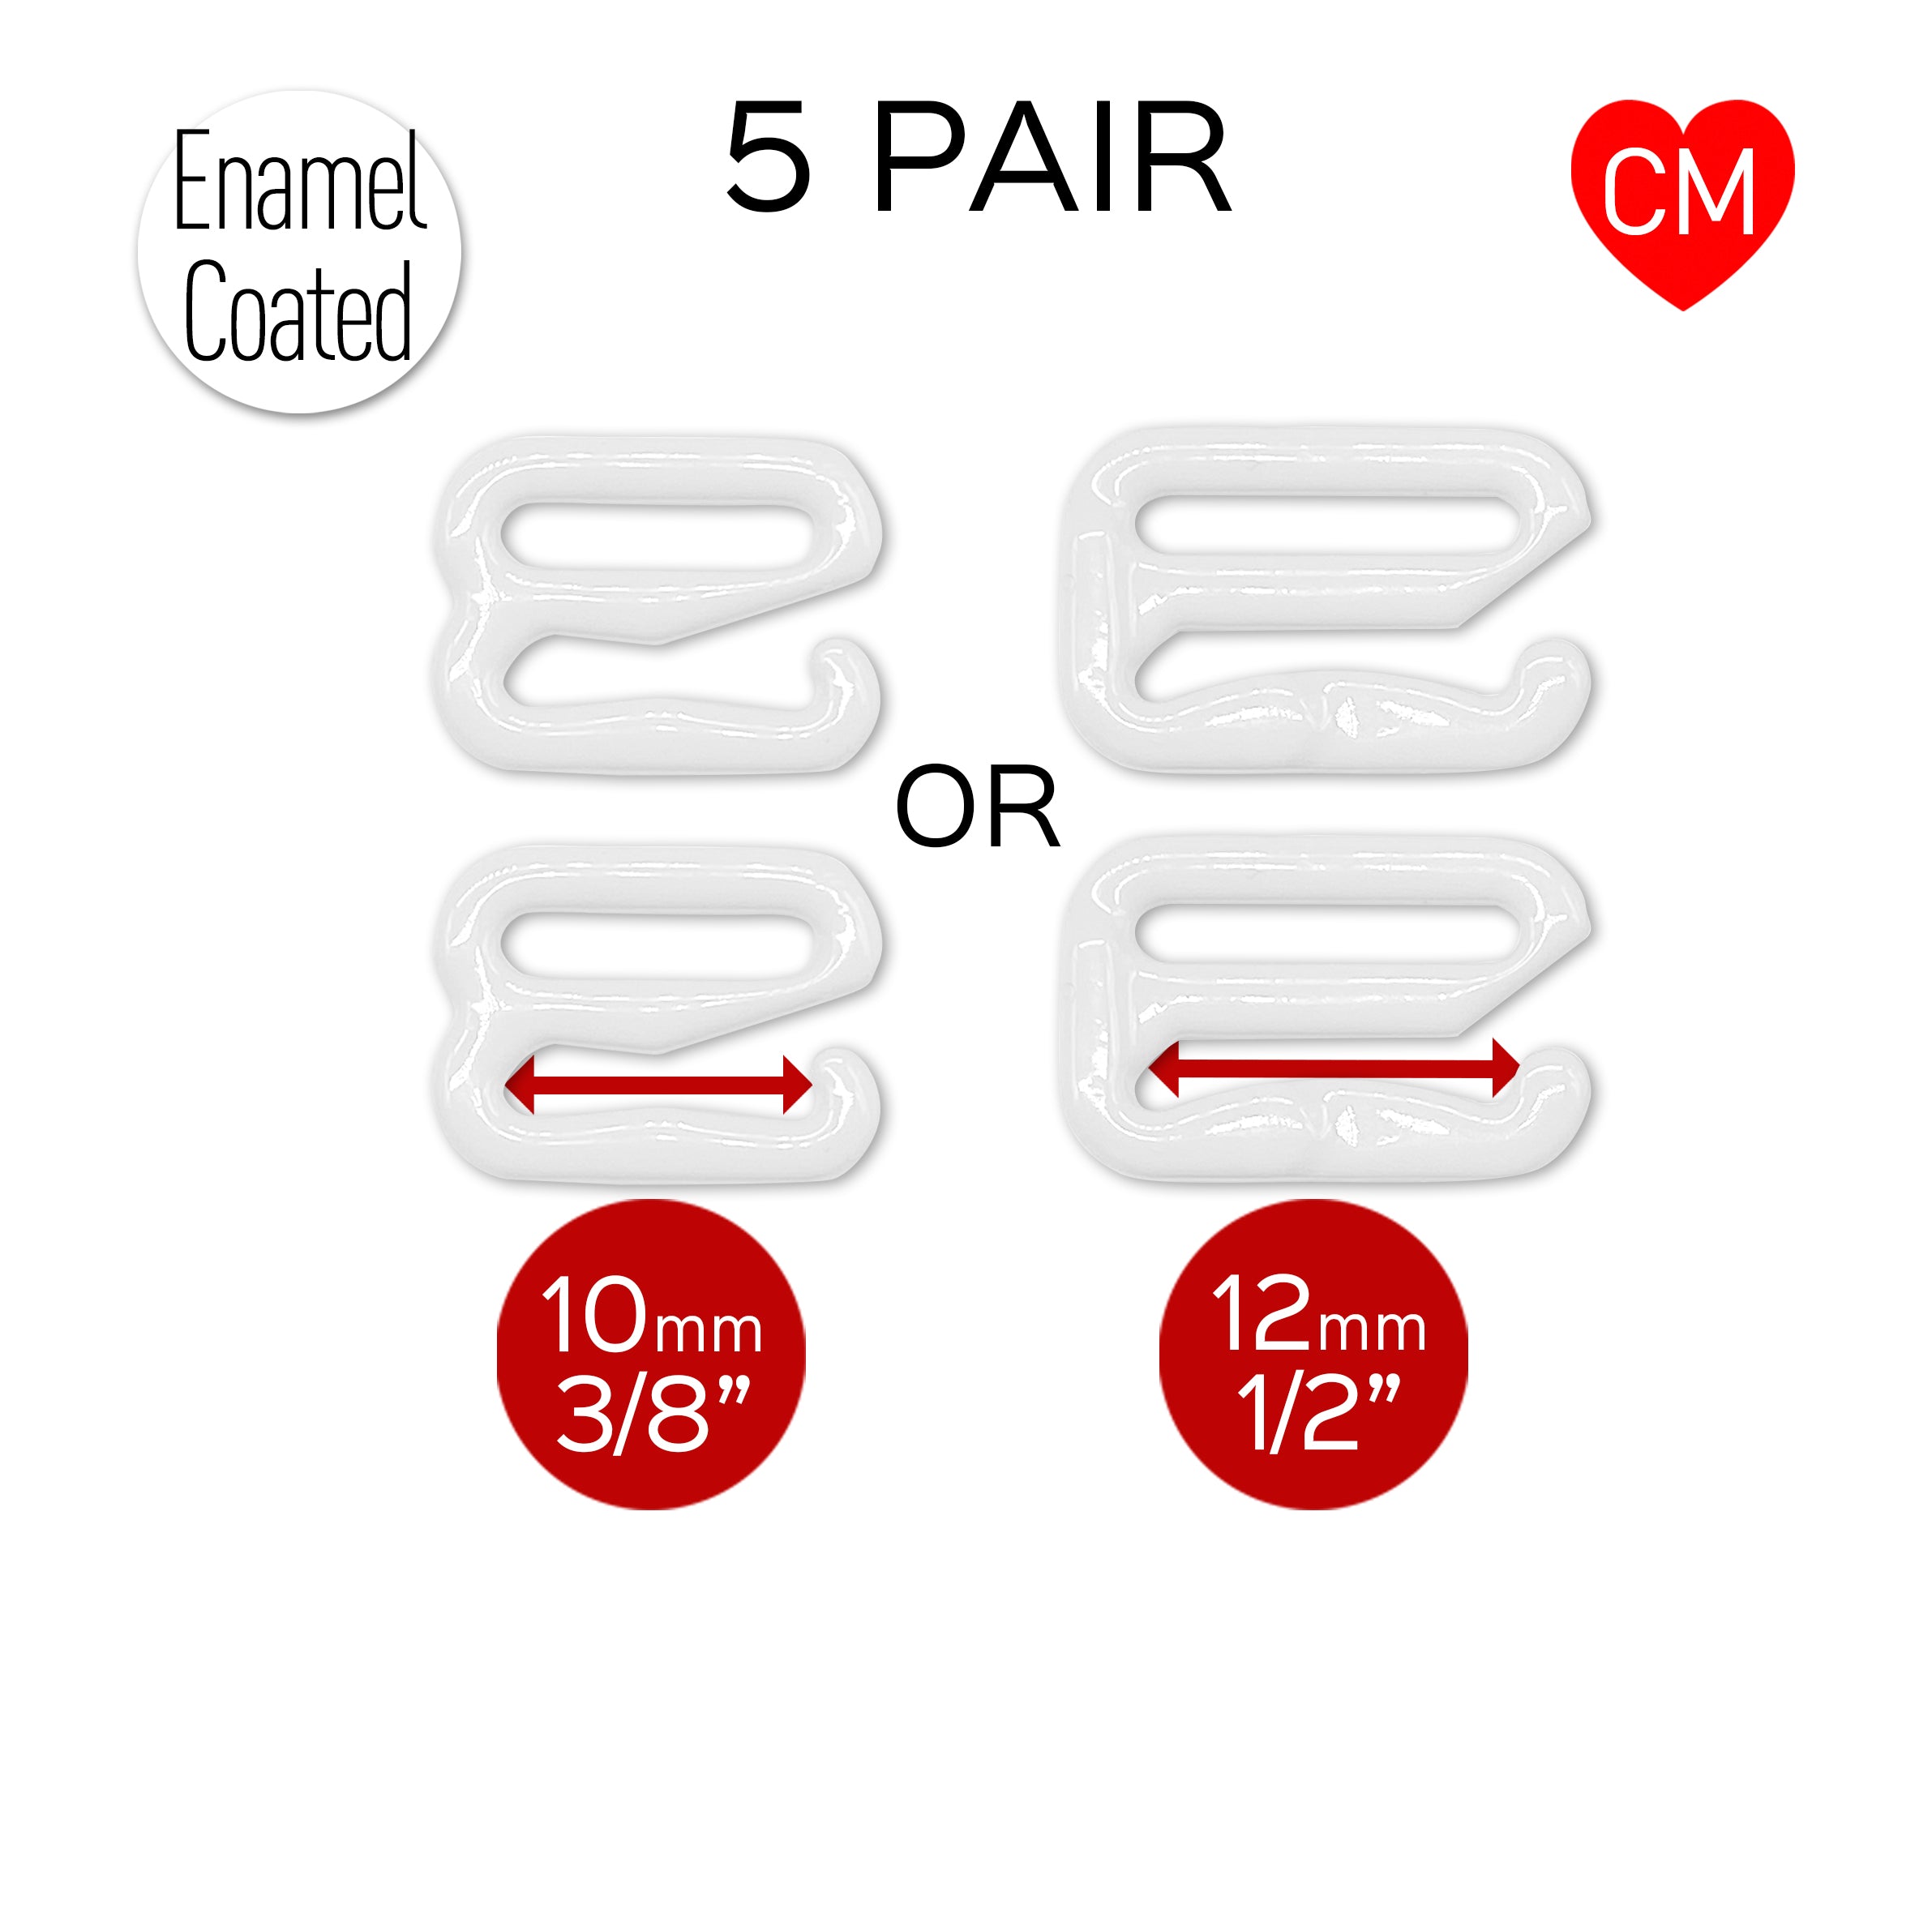 CLEARANCE- 5 Pair of Bra Strap Slider G Hooks in Enamel Coated White for Swimwear or Bra making- 3/8" or 1/2"